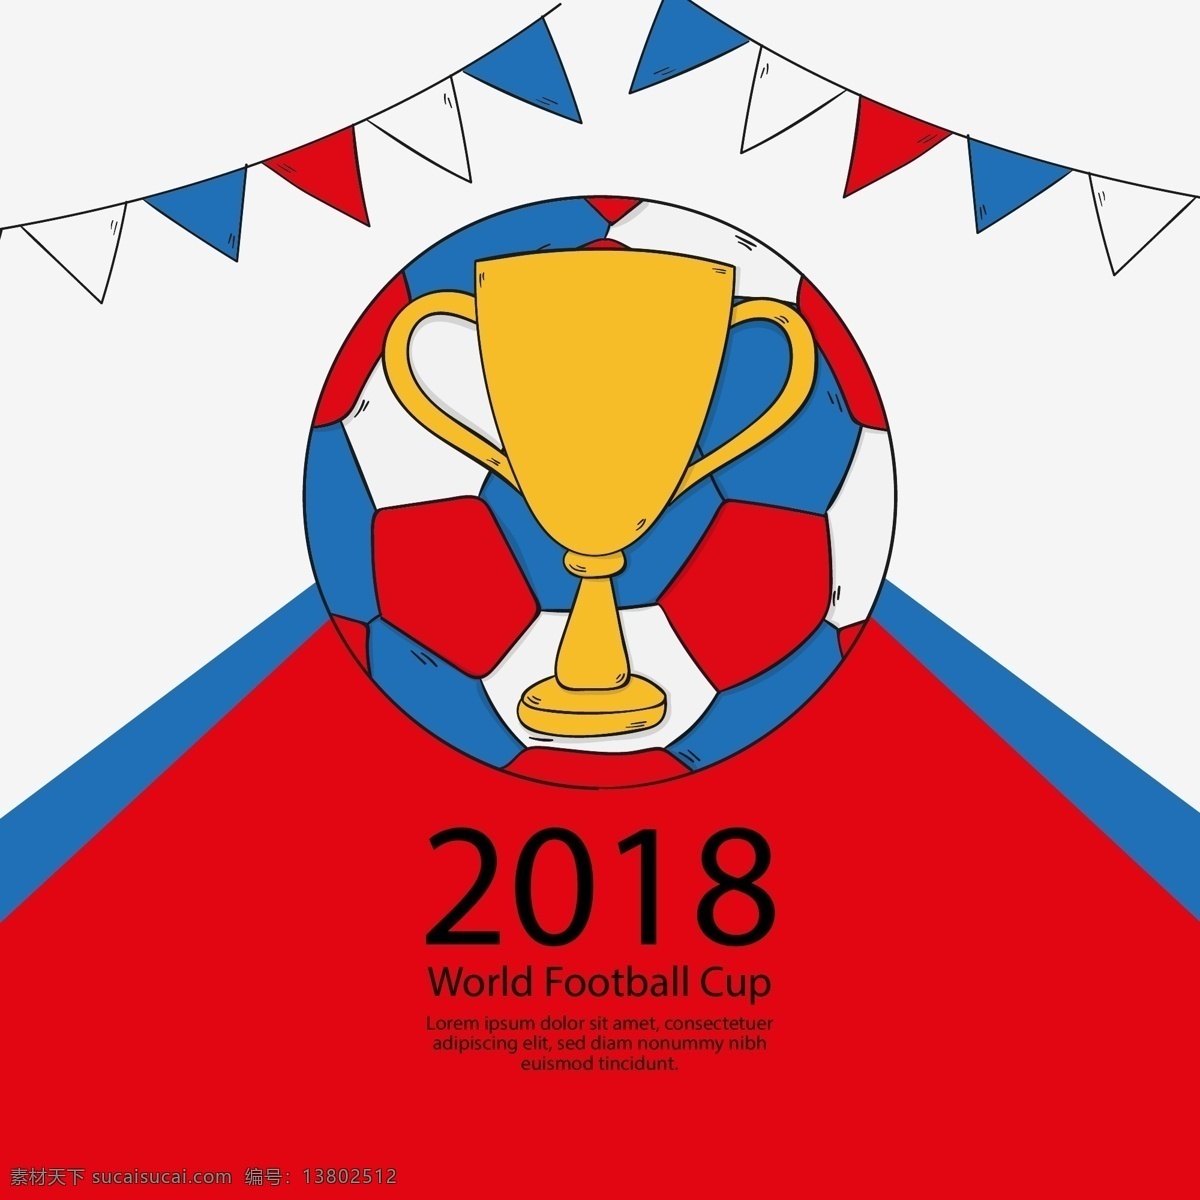 2018 手绘 风格 世界杯 足球赛 背景 矢量素材 足球 卡通 体育 俄罗斯 欧洲杯 比赛 竞赛